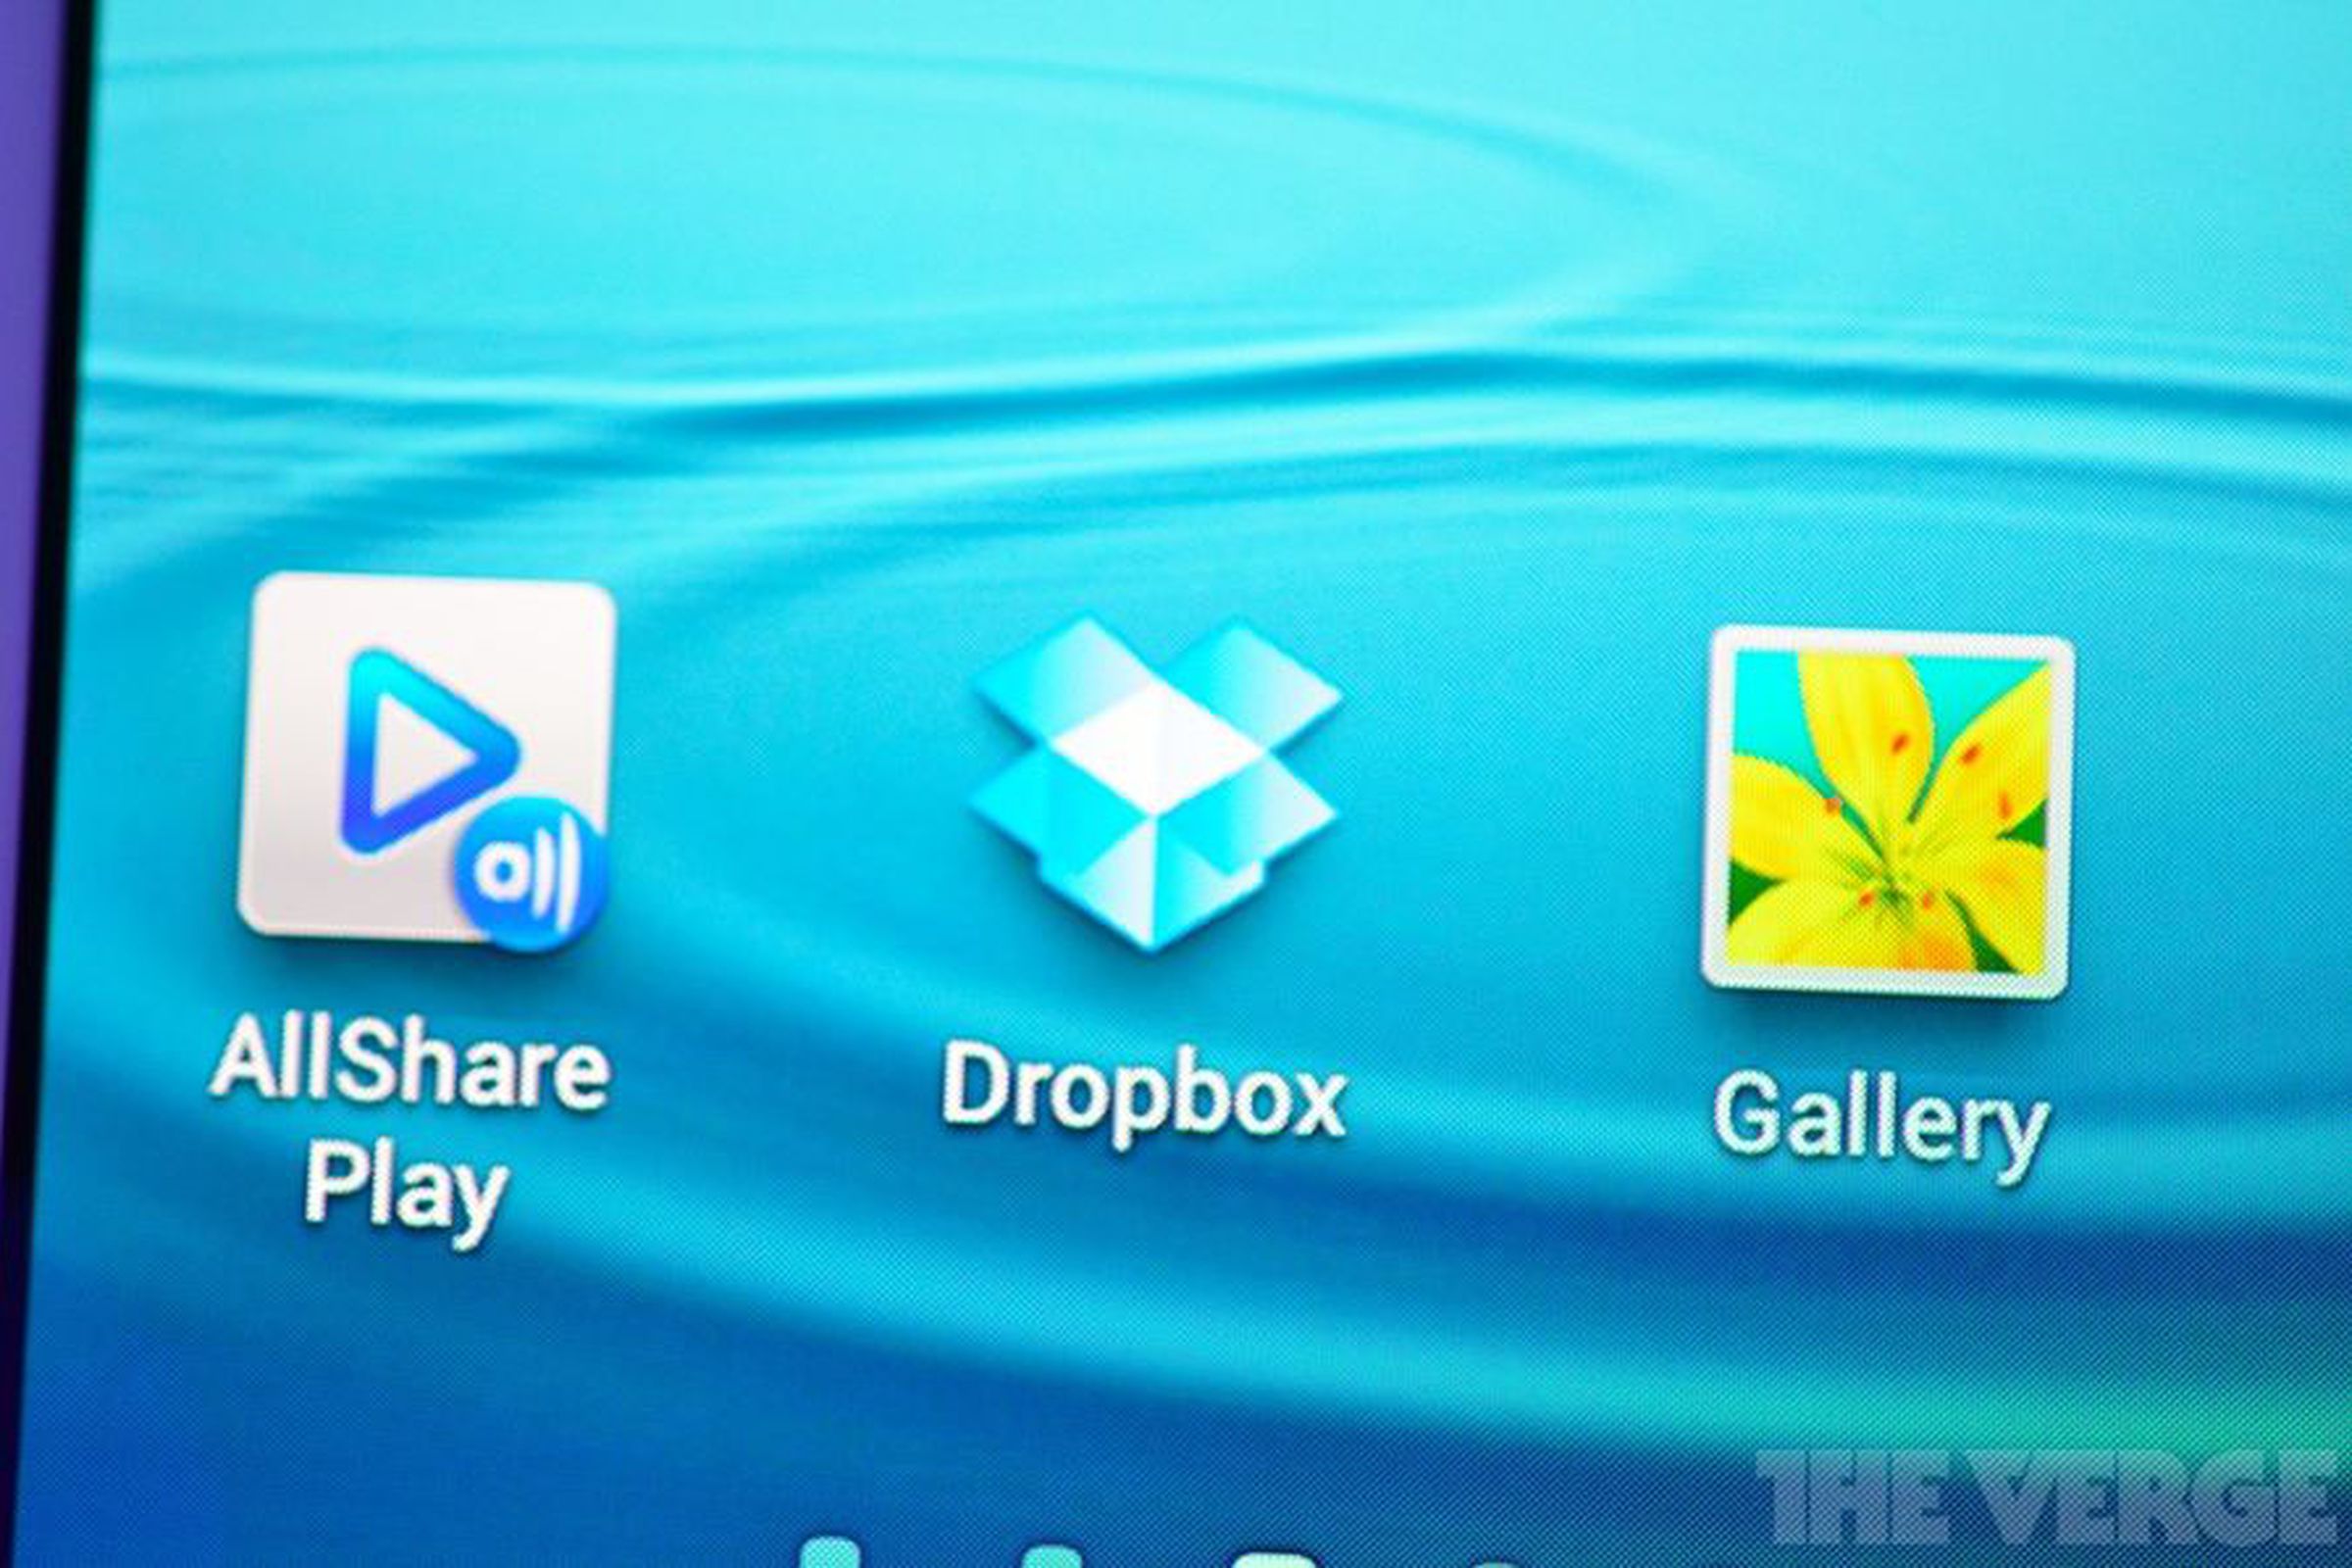 Samsung Galaxy S III Dropbox